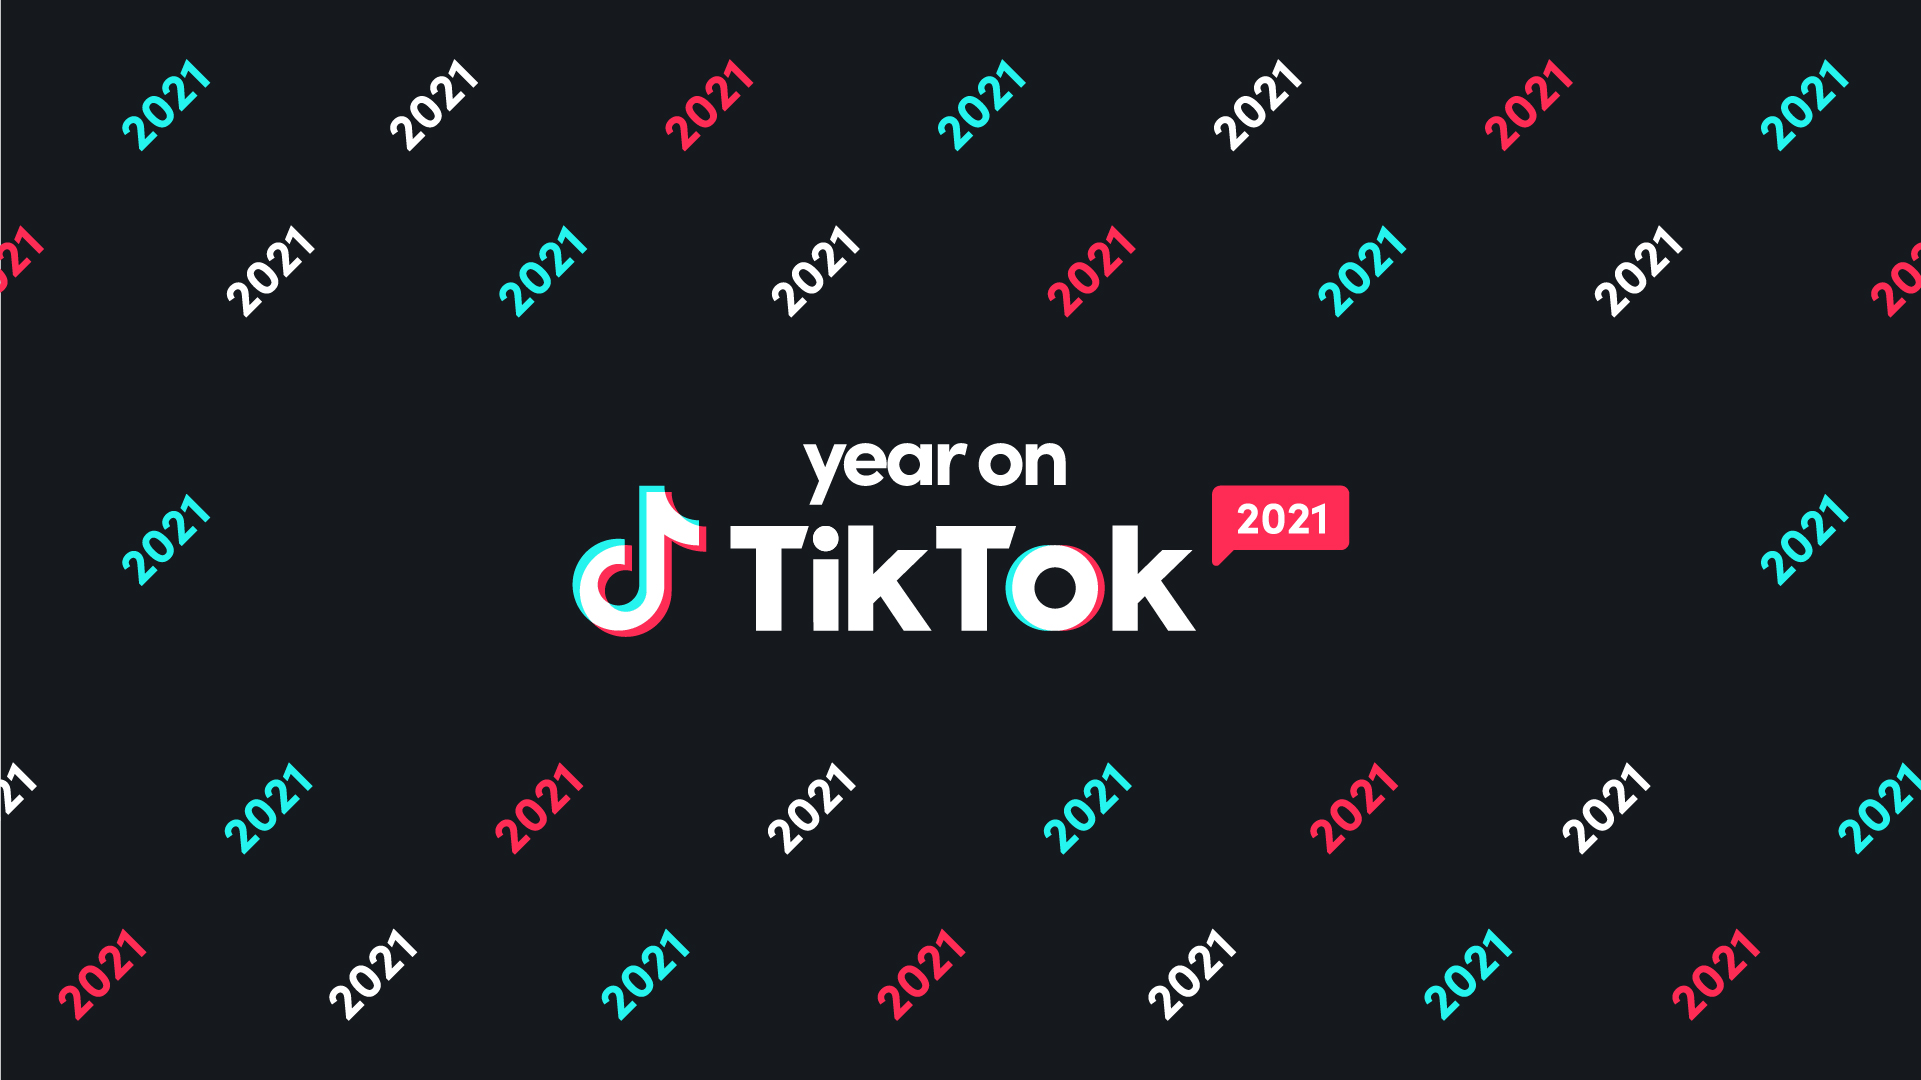 Year on TikTok: Nếu bạn đang muốn xem lại những khoảnh khắc đáng nhớ của mình trên TikTok trong năm qua, thì hãy truy cập vào các hình ảnh liên quan đến từ khóa Year on TikTok. Đó là nơi để bạn xem lại các video của mình và những chiến dịch quảng cáo đầy ấn tượng trên TikTok trong năm qua, để tìm ra những cách để cải thiện và phát triển tài khoản của mình trên nền tảng mạng xã hội này.